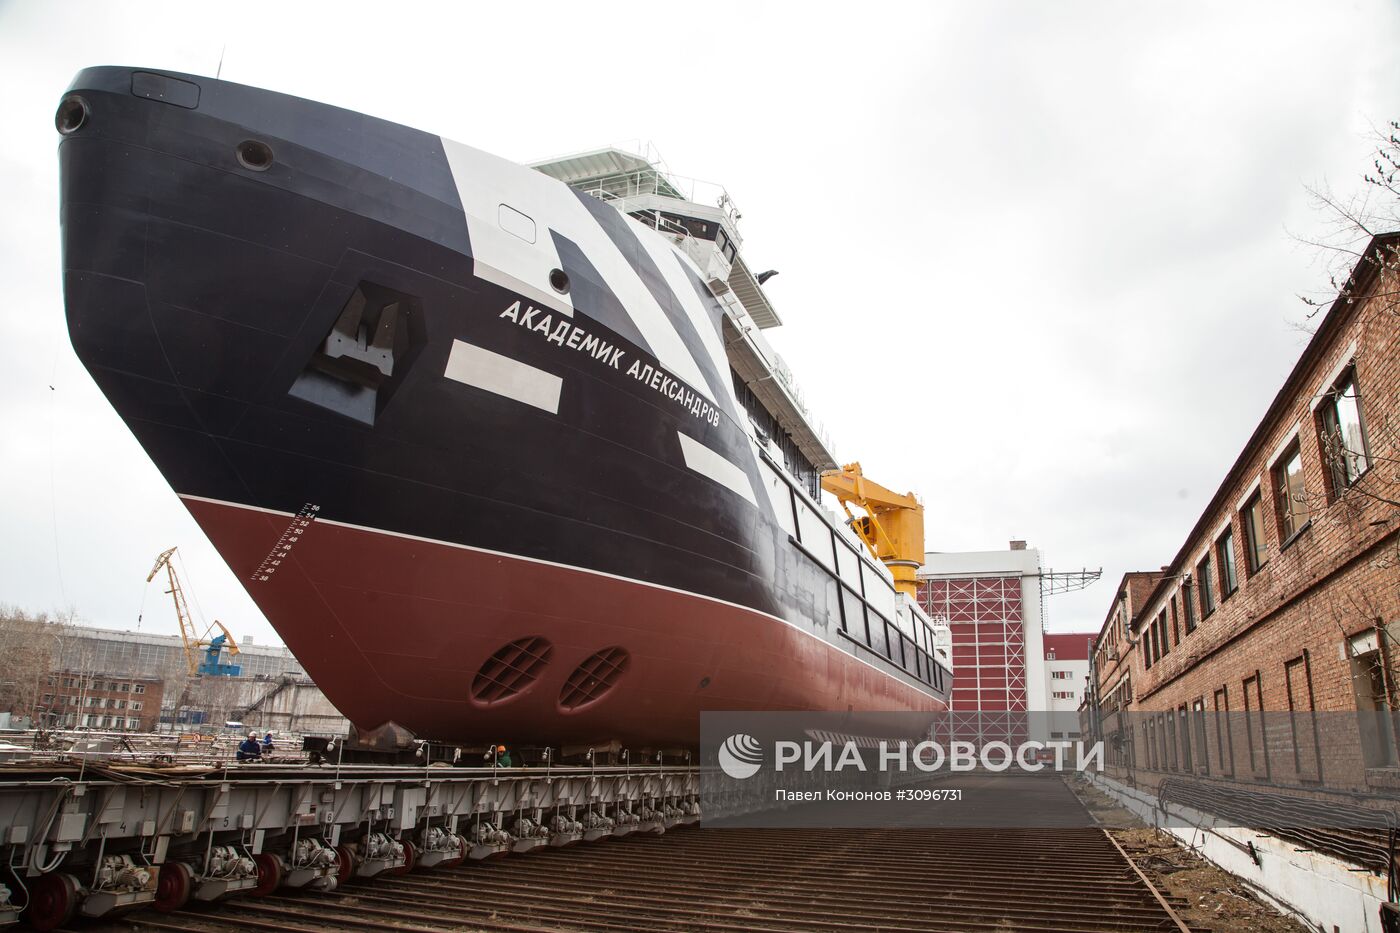 Спуск на воду спасательного буксирного судна "Академик Александров" в Северодвинске